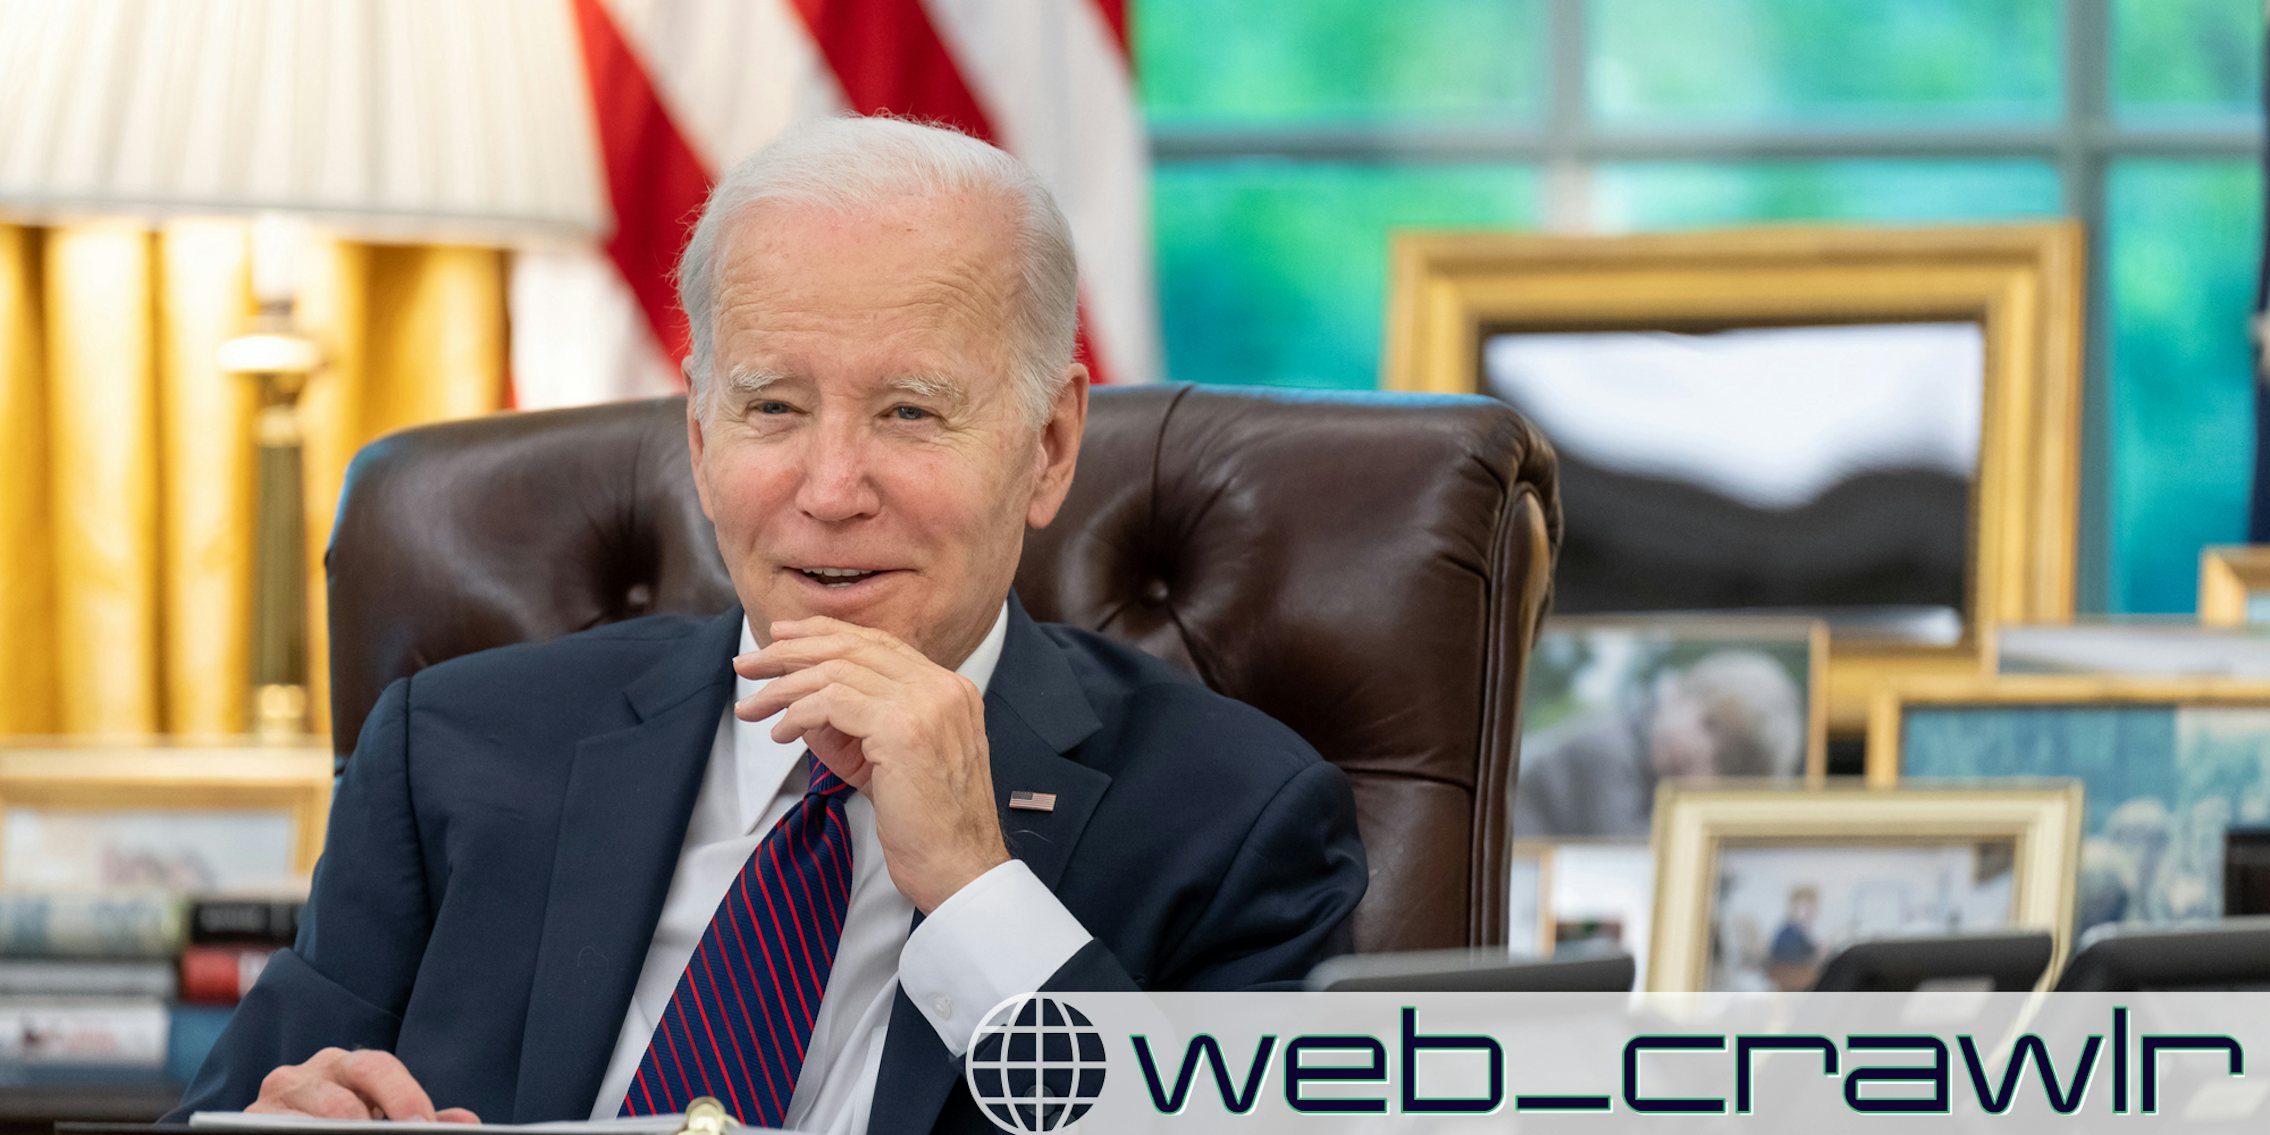 President Joe Biden. The Daily Dot newsletter web_crawlr logo is in the bottom right corner.